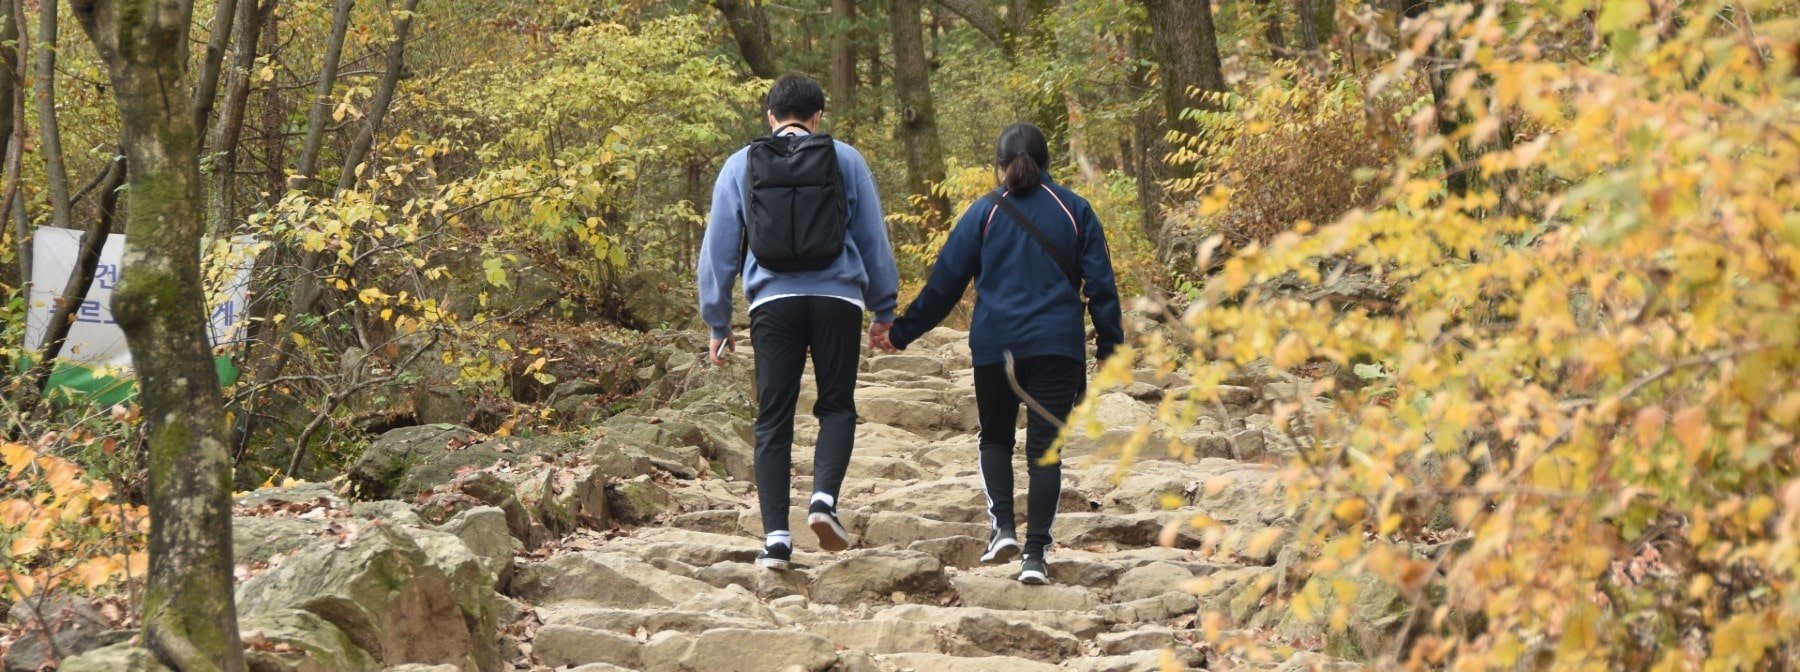 Σύμφωνα με μια νέα μελέτη το περπάτημα με τον σύντροφό σου θα μπορούσε να σε επιβραδύνει